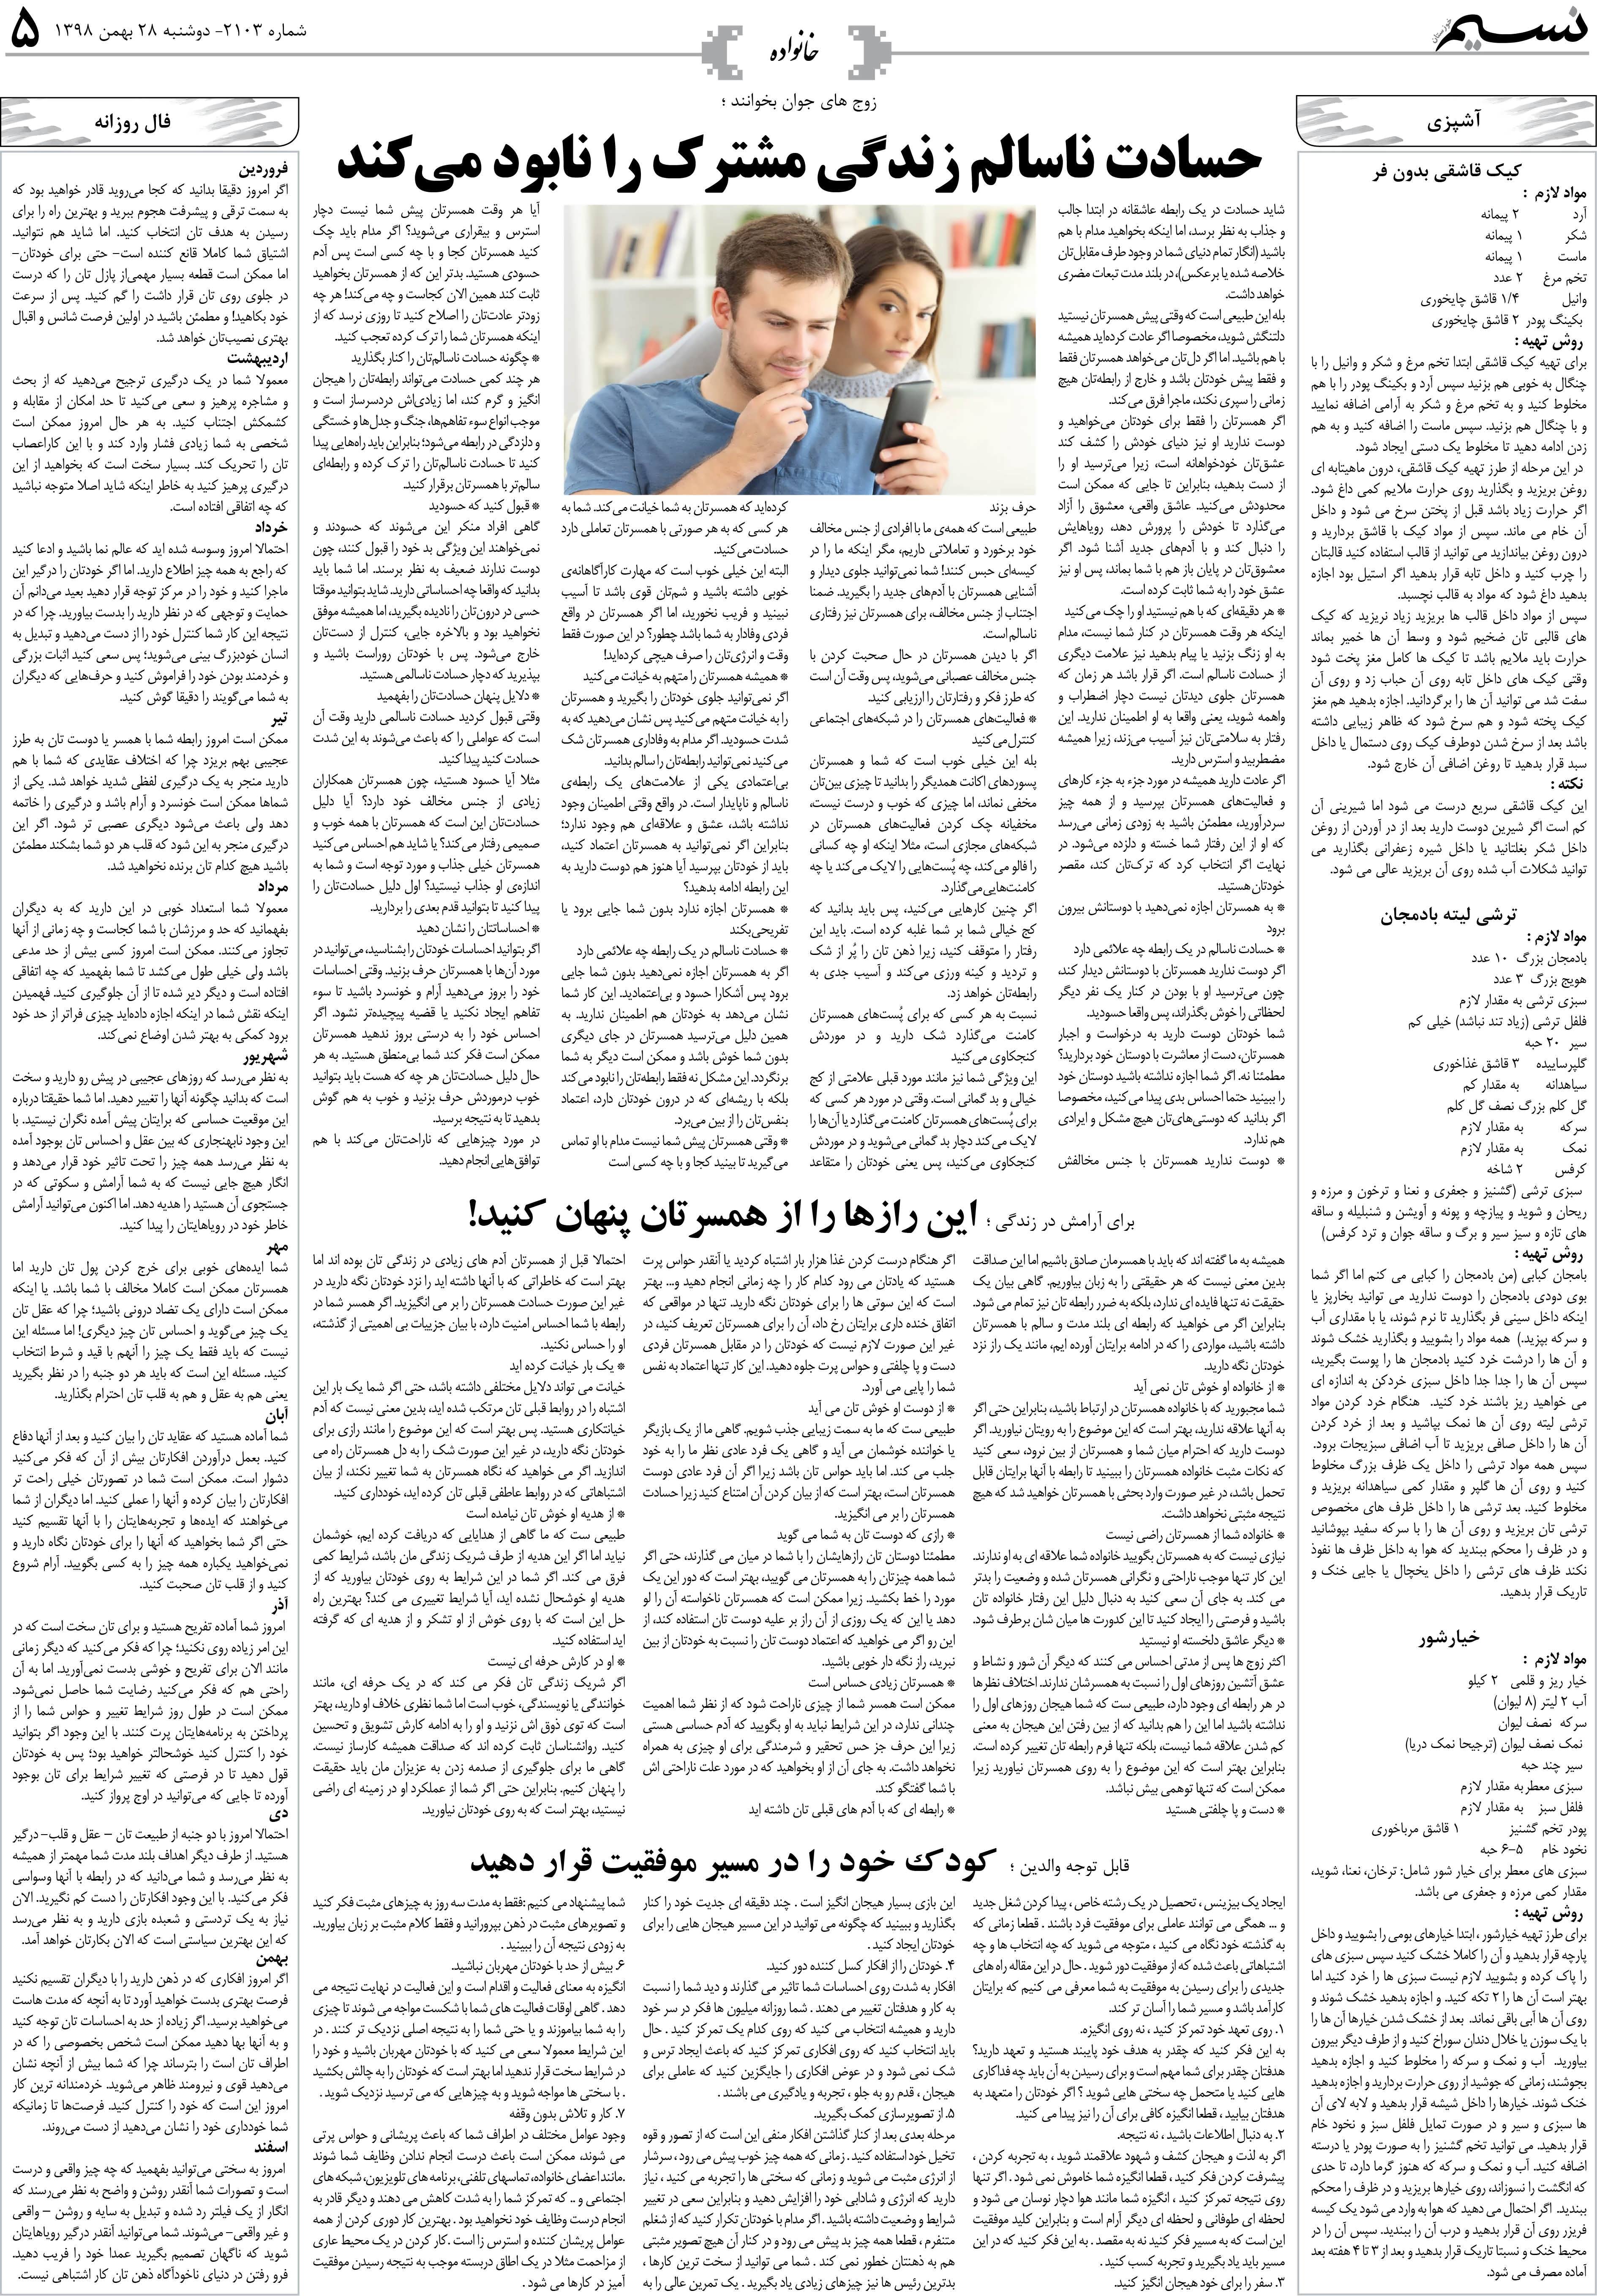 صفحه خانواده روزنامه نسیم شماره 2103